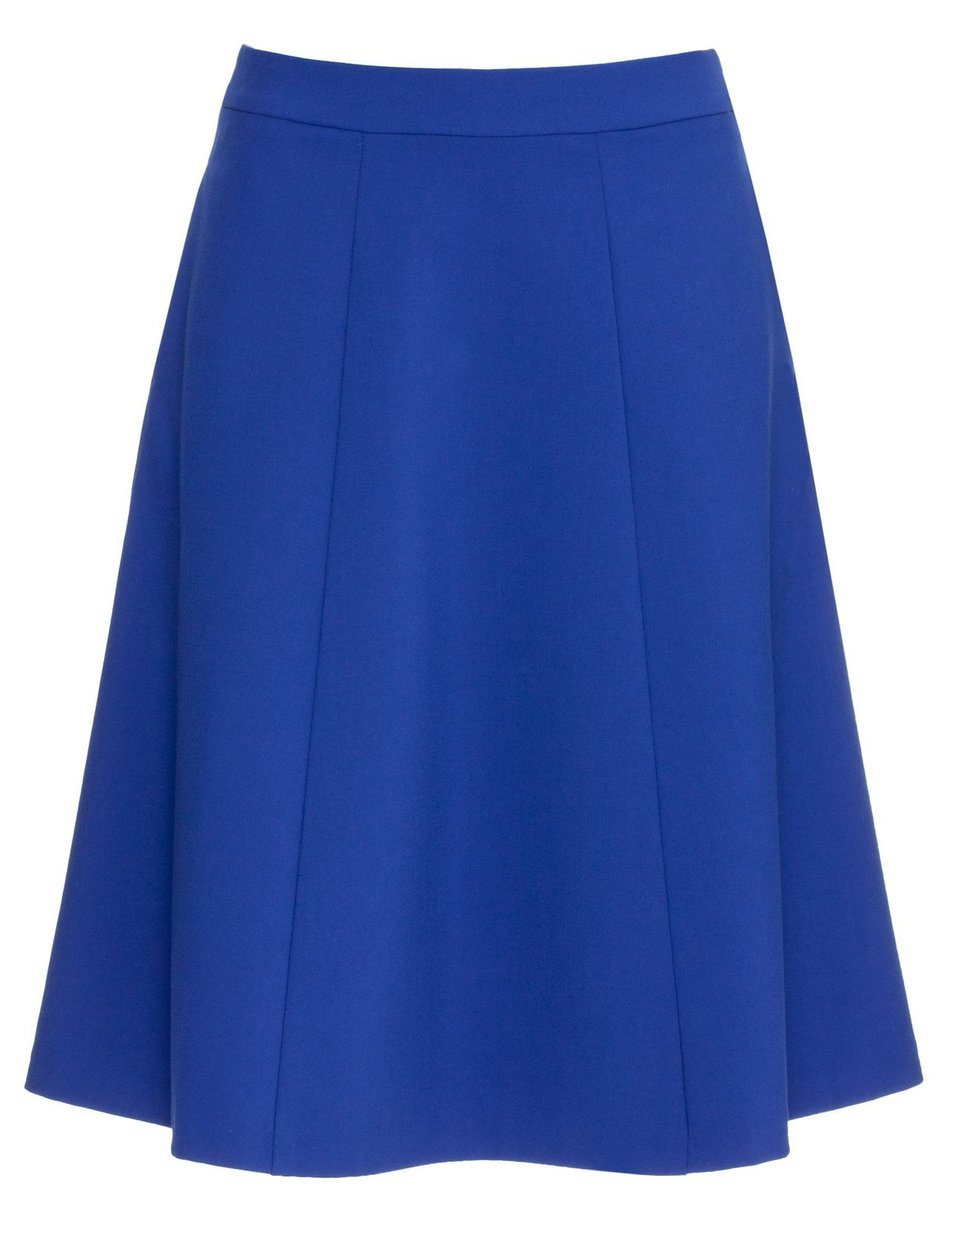 Modrá áčková sukně, Mohito, info o ceně v obchodě.